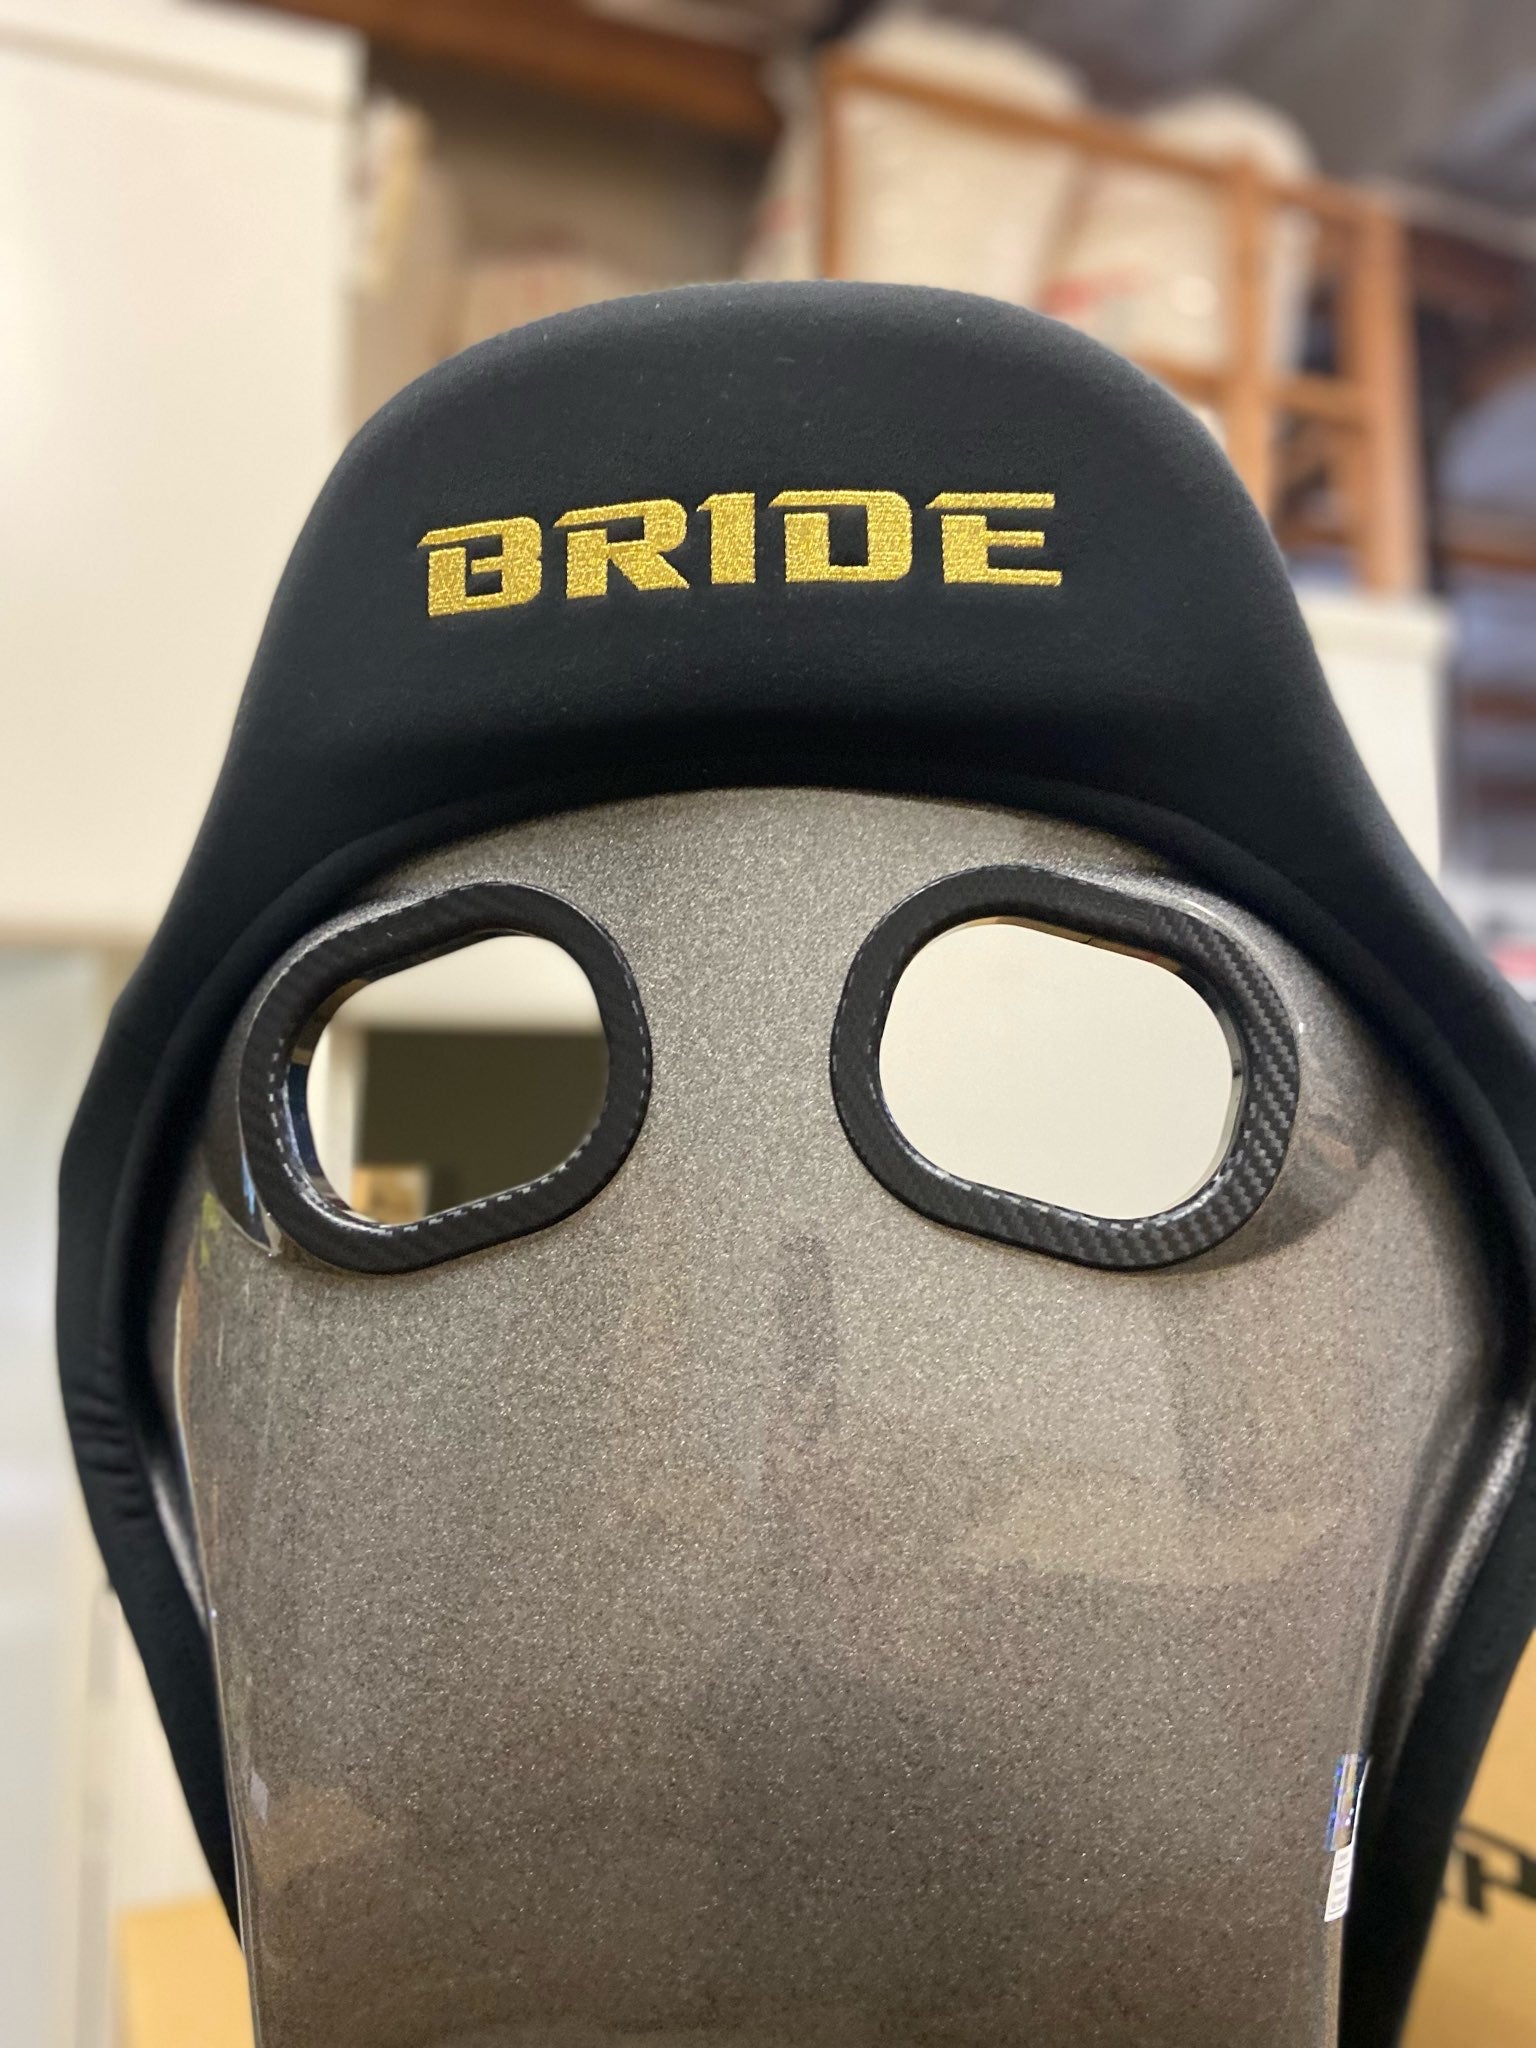 Bride Zieg IV Wide Gold Stitching (US Exclusive)